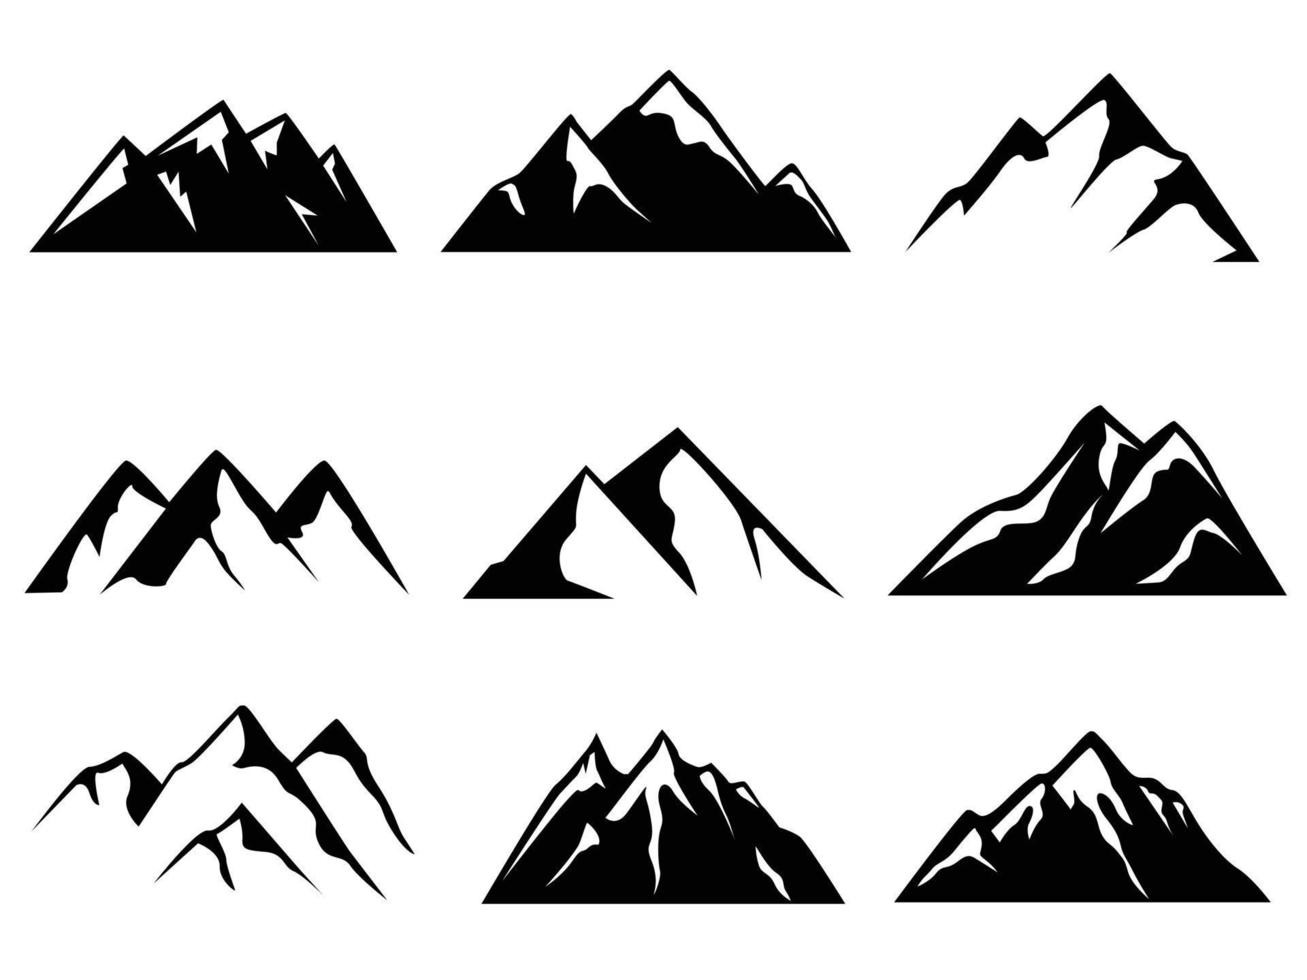 Mountain silhouettes clip art collection set vector